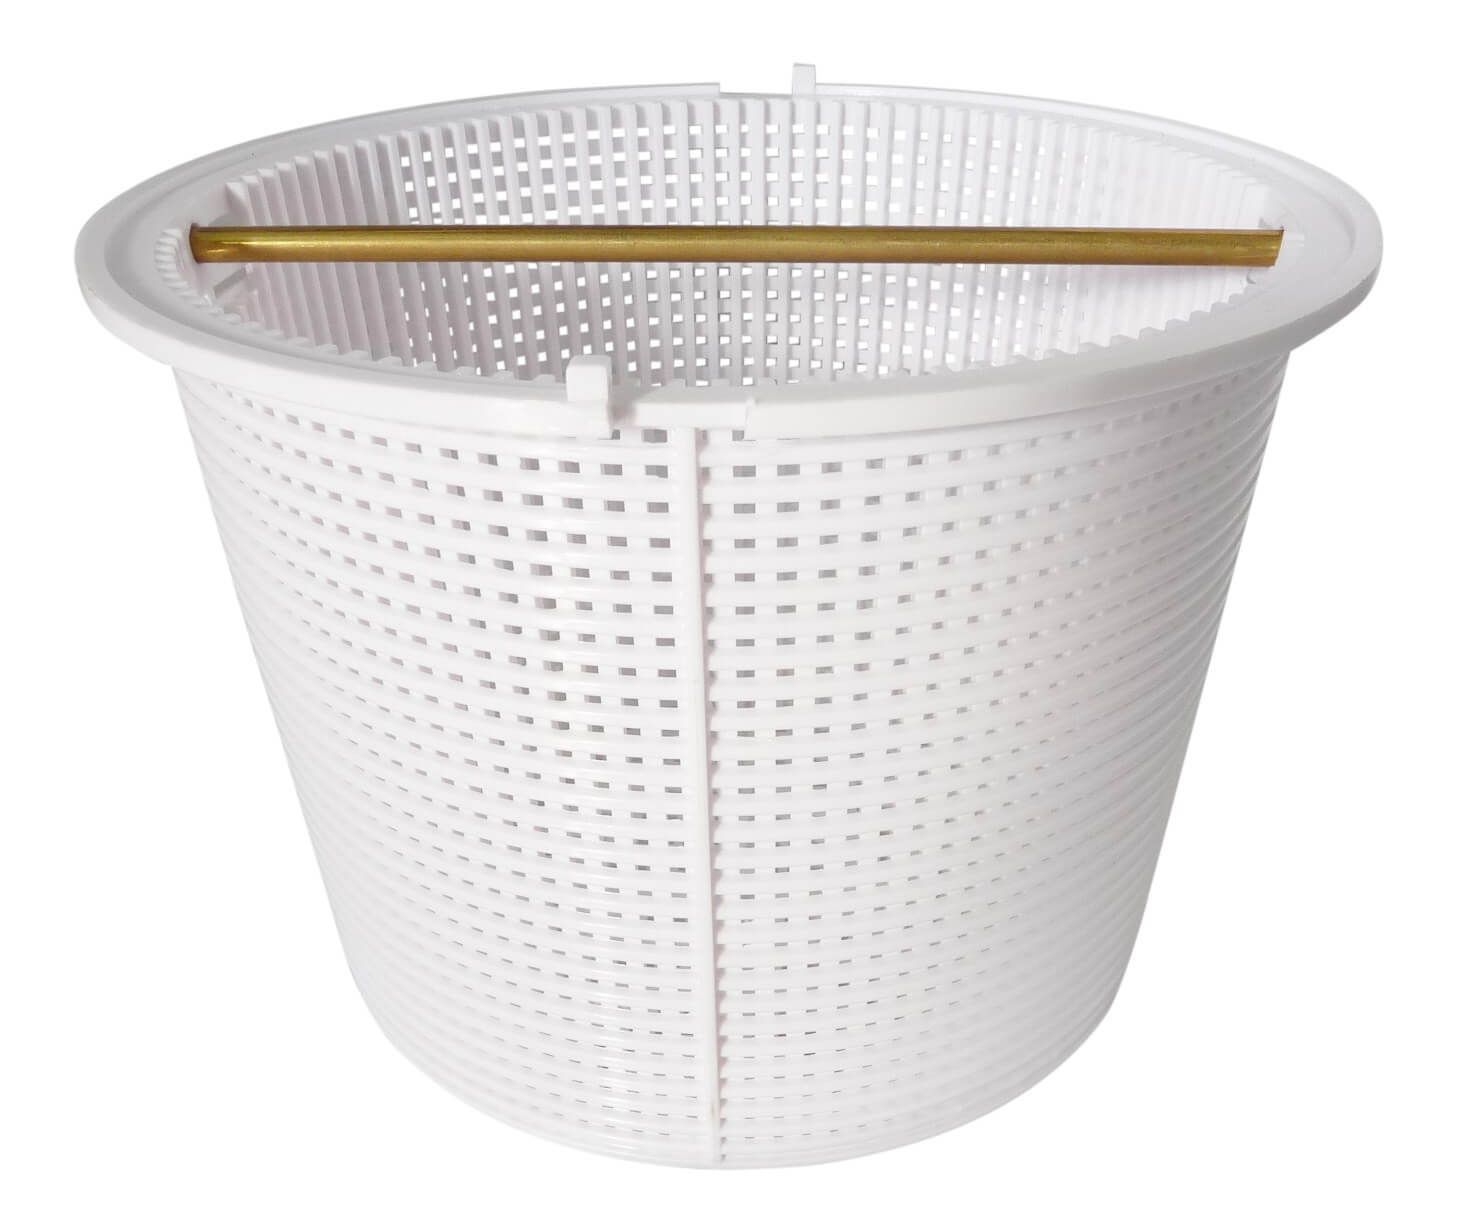 Quiptron Skimmer Basket c/w Brass Handle - Aussie Gold Quiptron Basket 